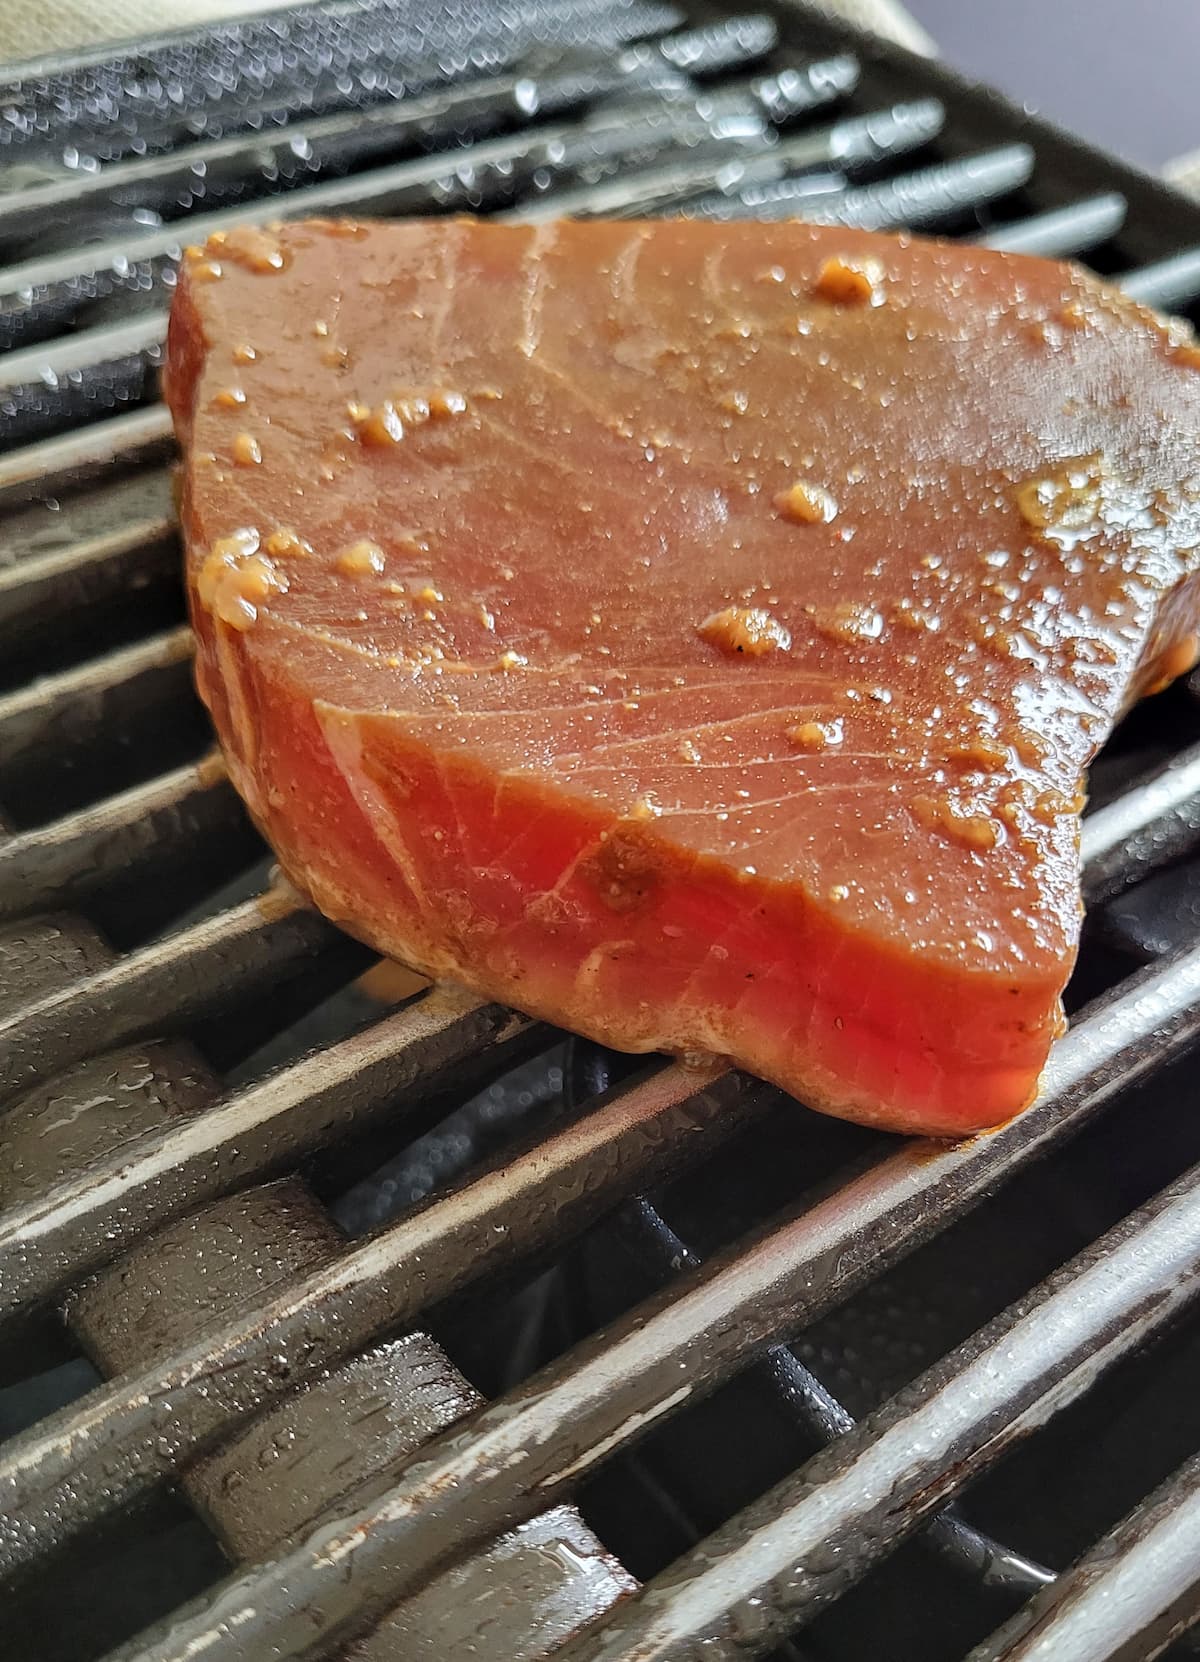 raw tuna steak on a grill